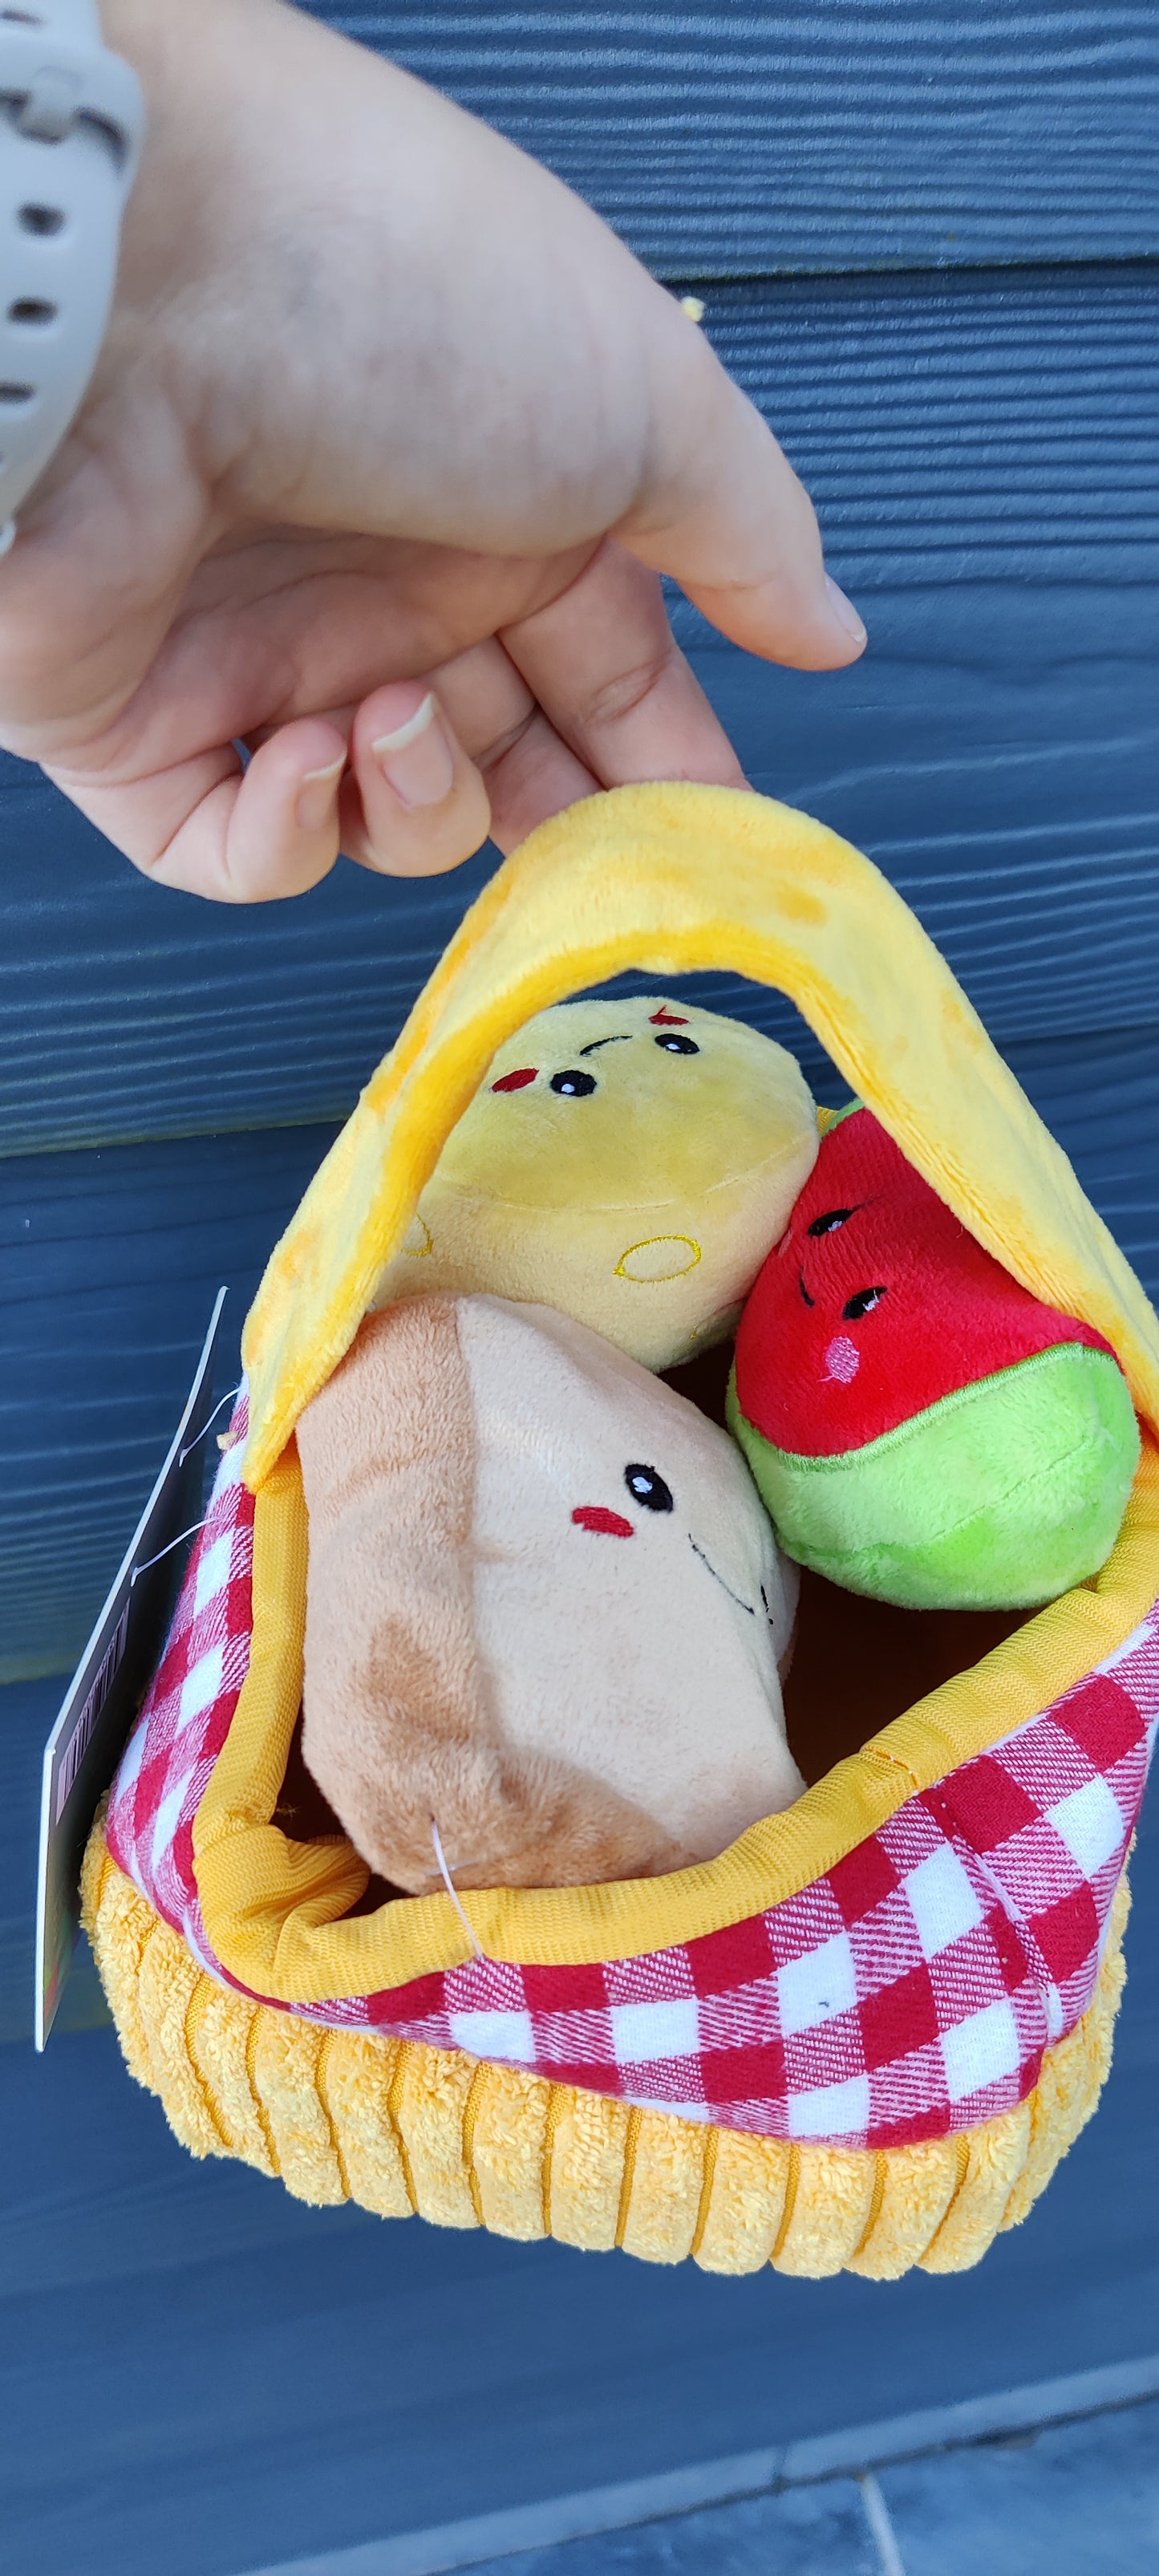 Hugsmart - Picnic Mandje | Lente/zomer knuffel piep speelgoed verrijking hond/puppy